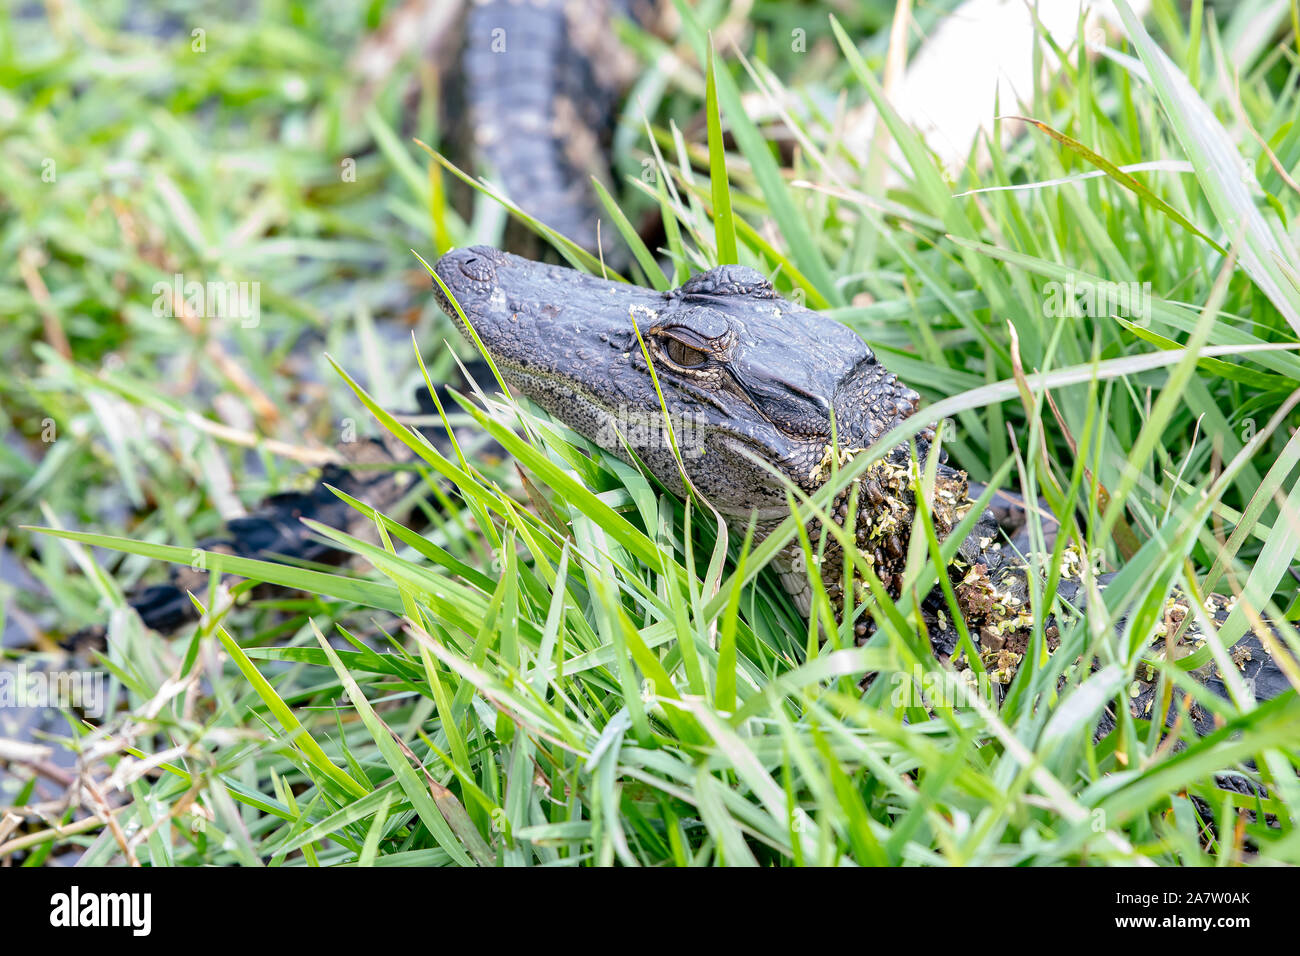 Baby American alligator versteckt am Rande eines Sees in Florida Stockfoto